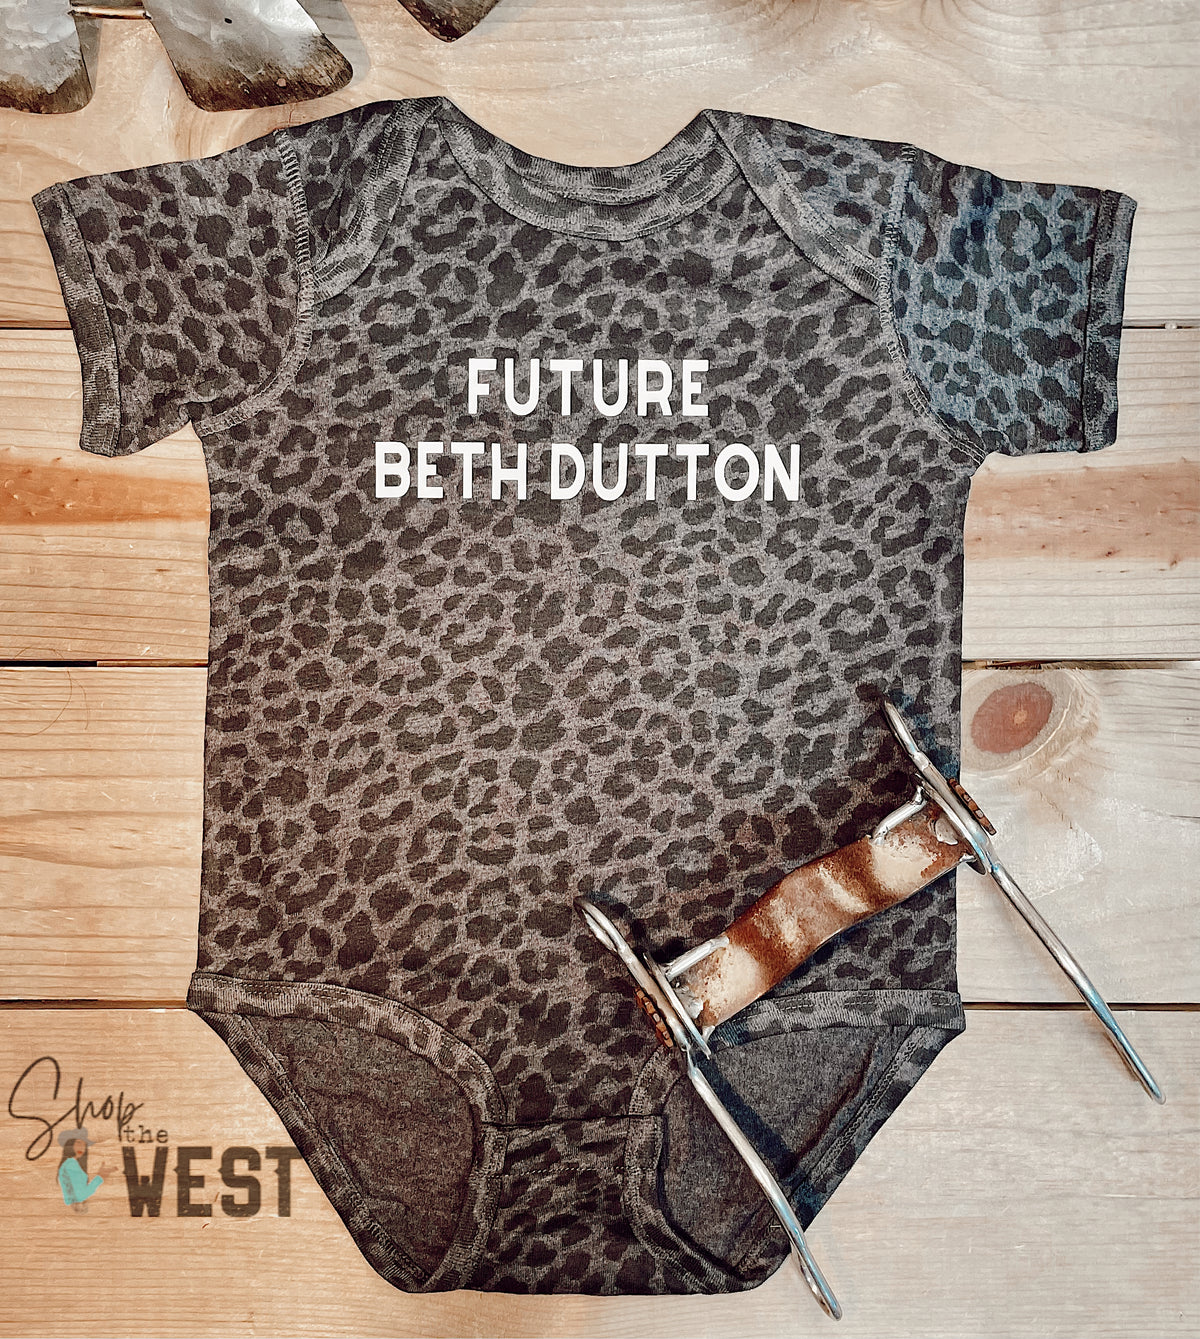 Future Beth Dutton